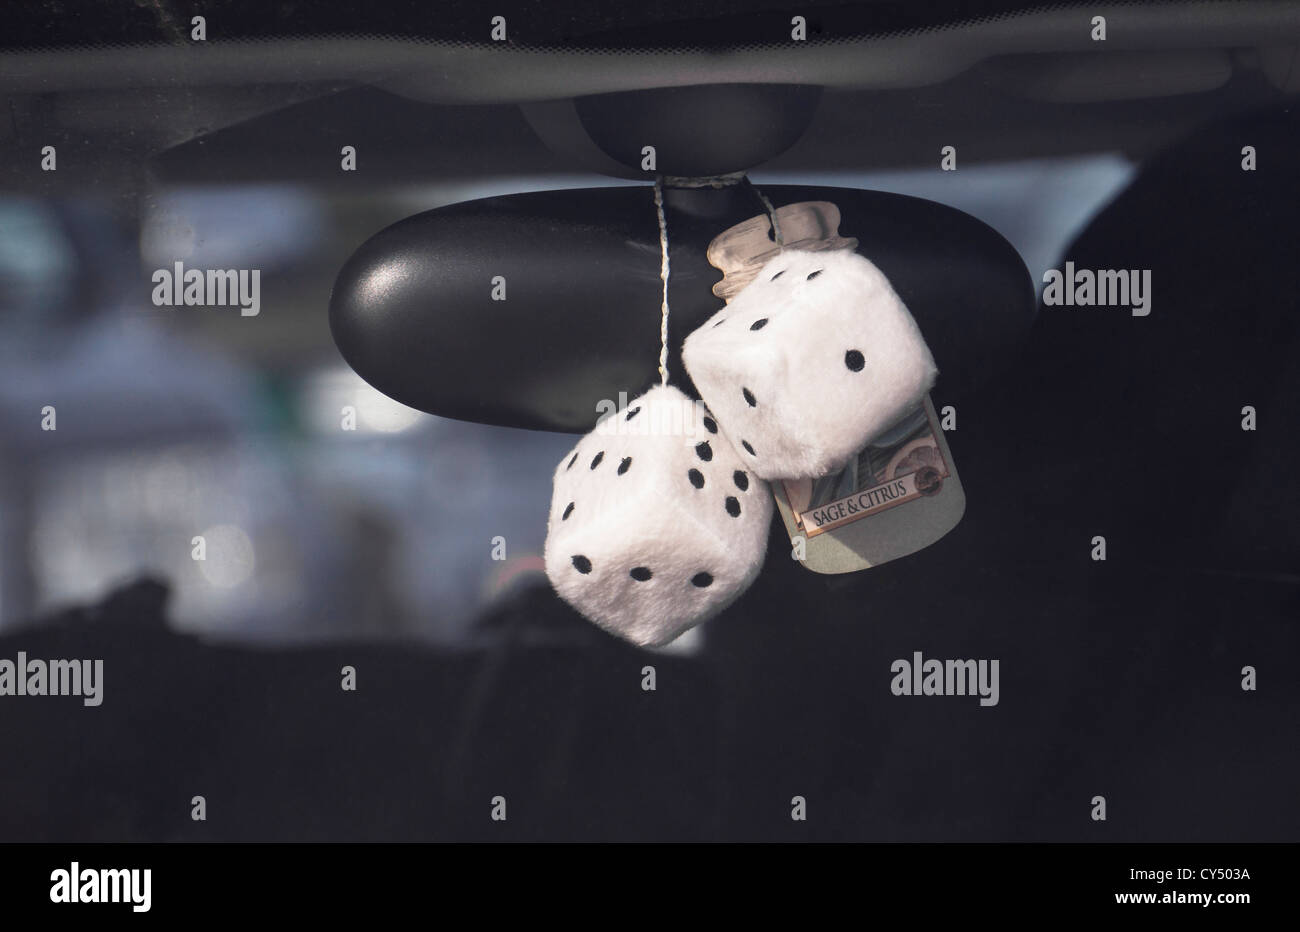 Flauschige Lufterfrischer Würfel und in der Luft hängen von den Rückspiegel  eines Autos Stockfotografie - Alamy